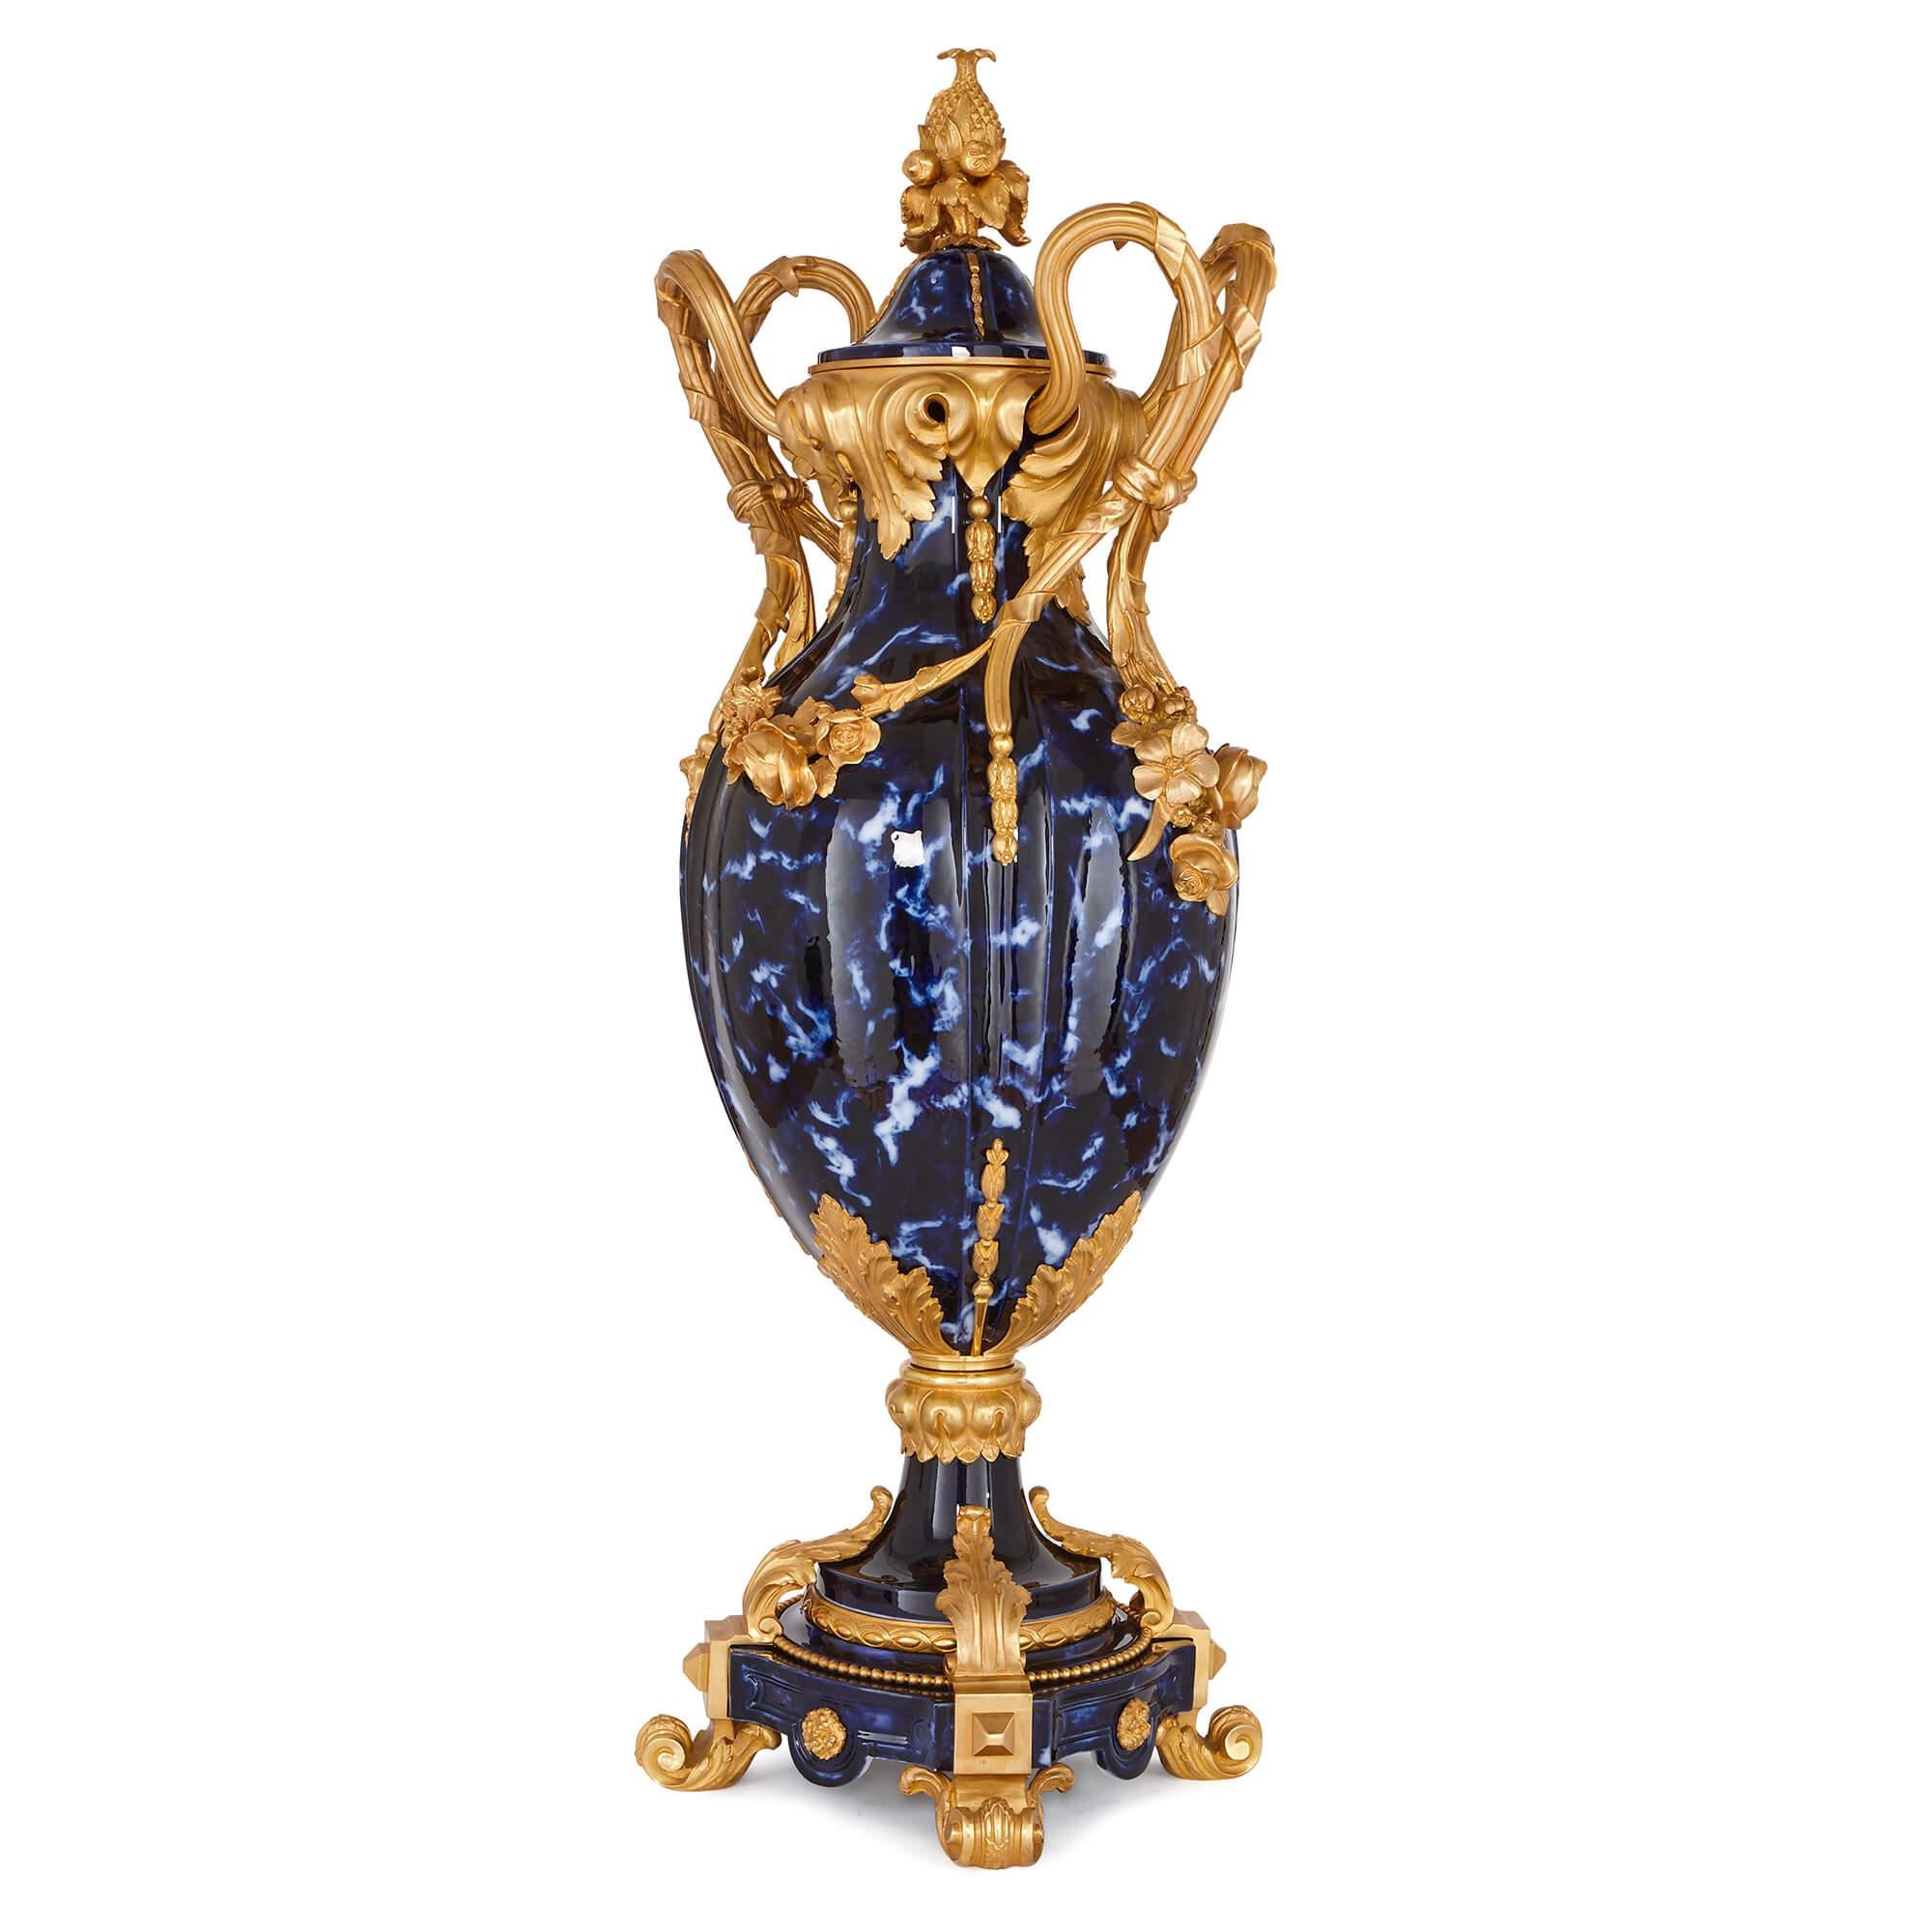 Les deux vases sont de grande forme ovoïde, avec des corps cannelés, et sont fabriqués en céramique avec une couleur bleue tachetée. Les vases sont dotés de deux anses à enroulement en bronze doré, reliées par des guirlandes florales, et leurs